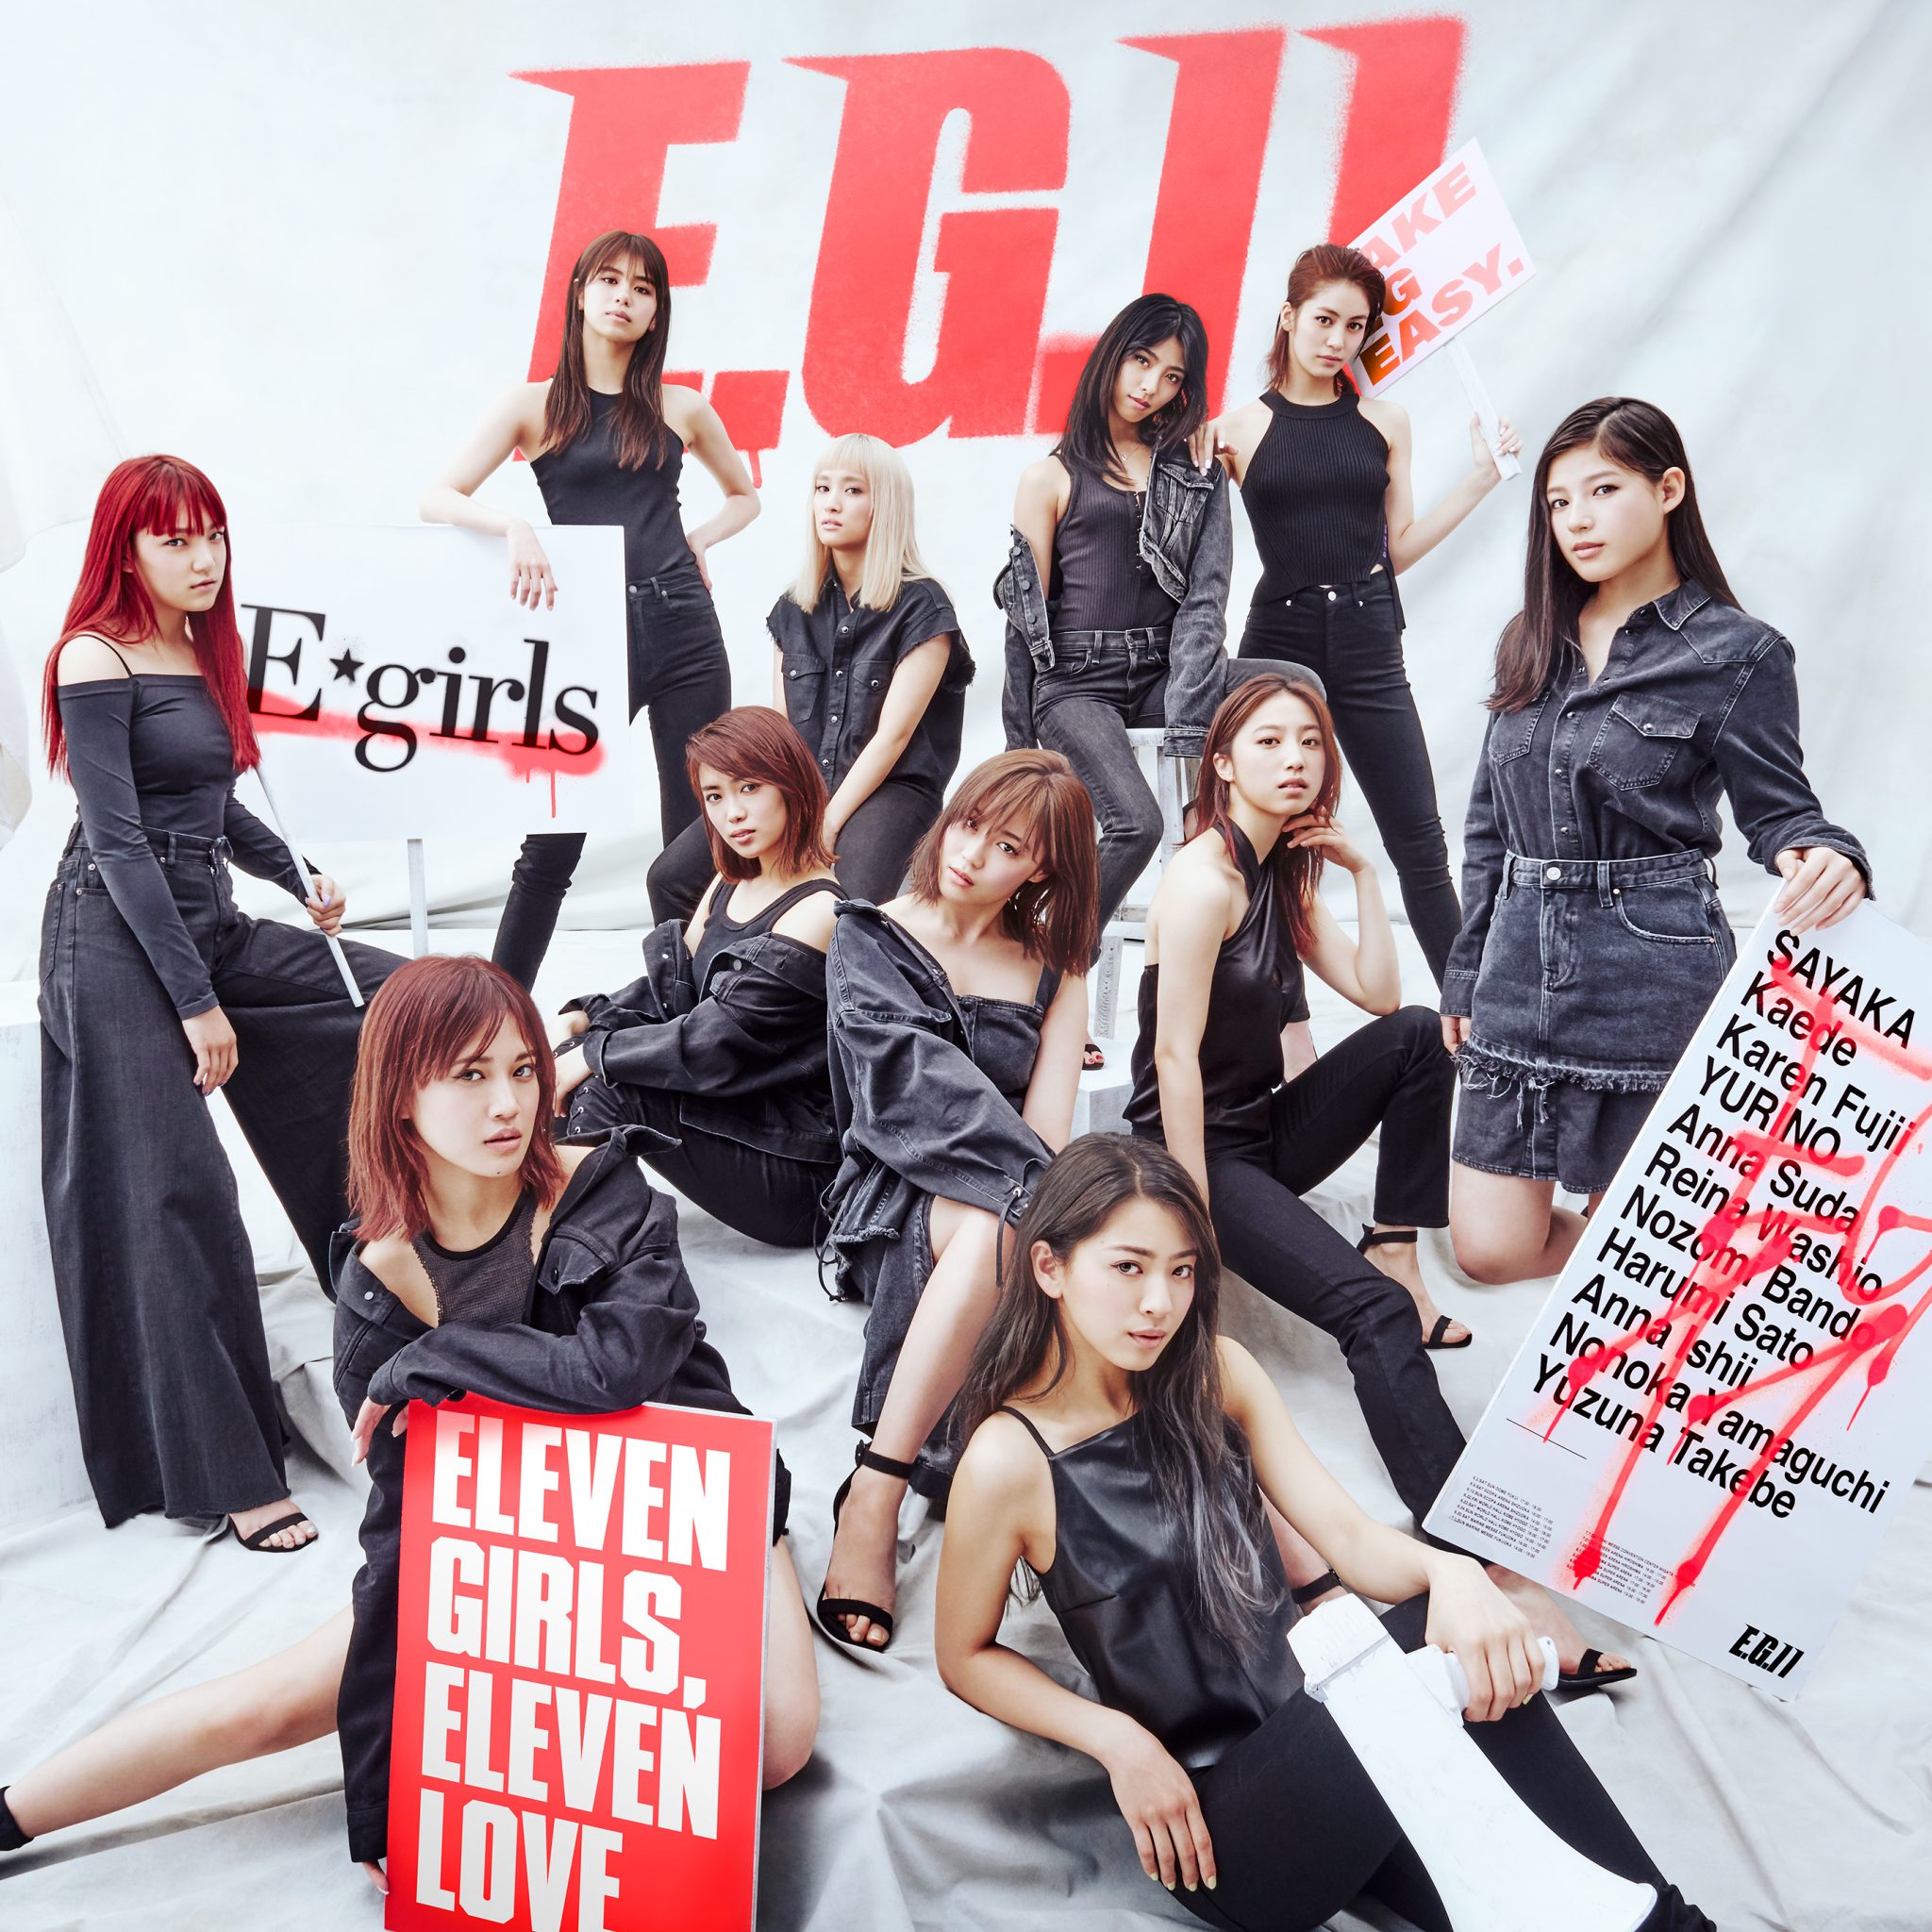 E Girls 佐藤晴美 藤井夏恋が語る ニューアルバム E G 11 のこと Men Sjoker Premium メンズファッション雑誌